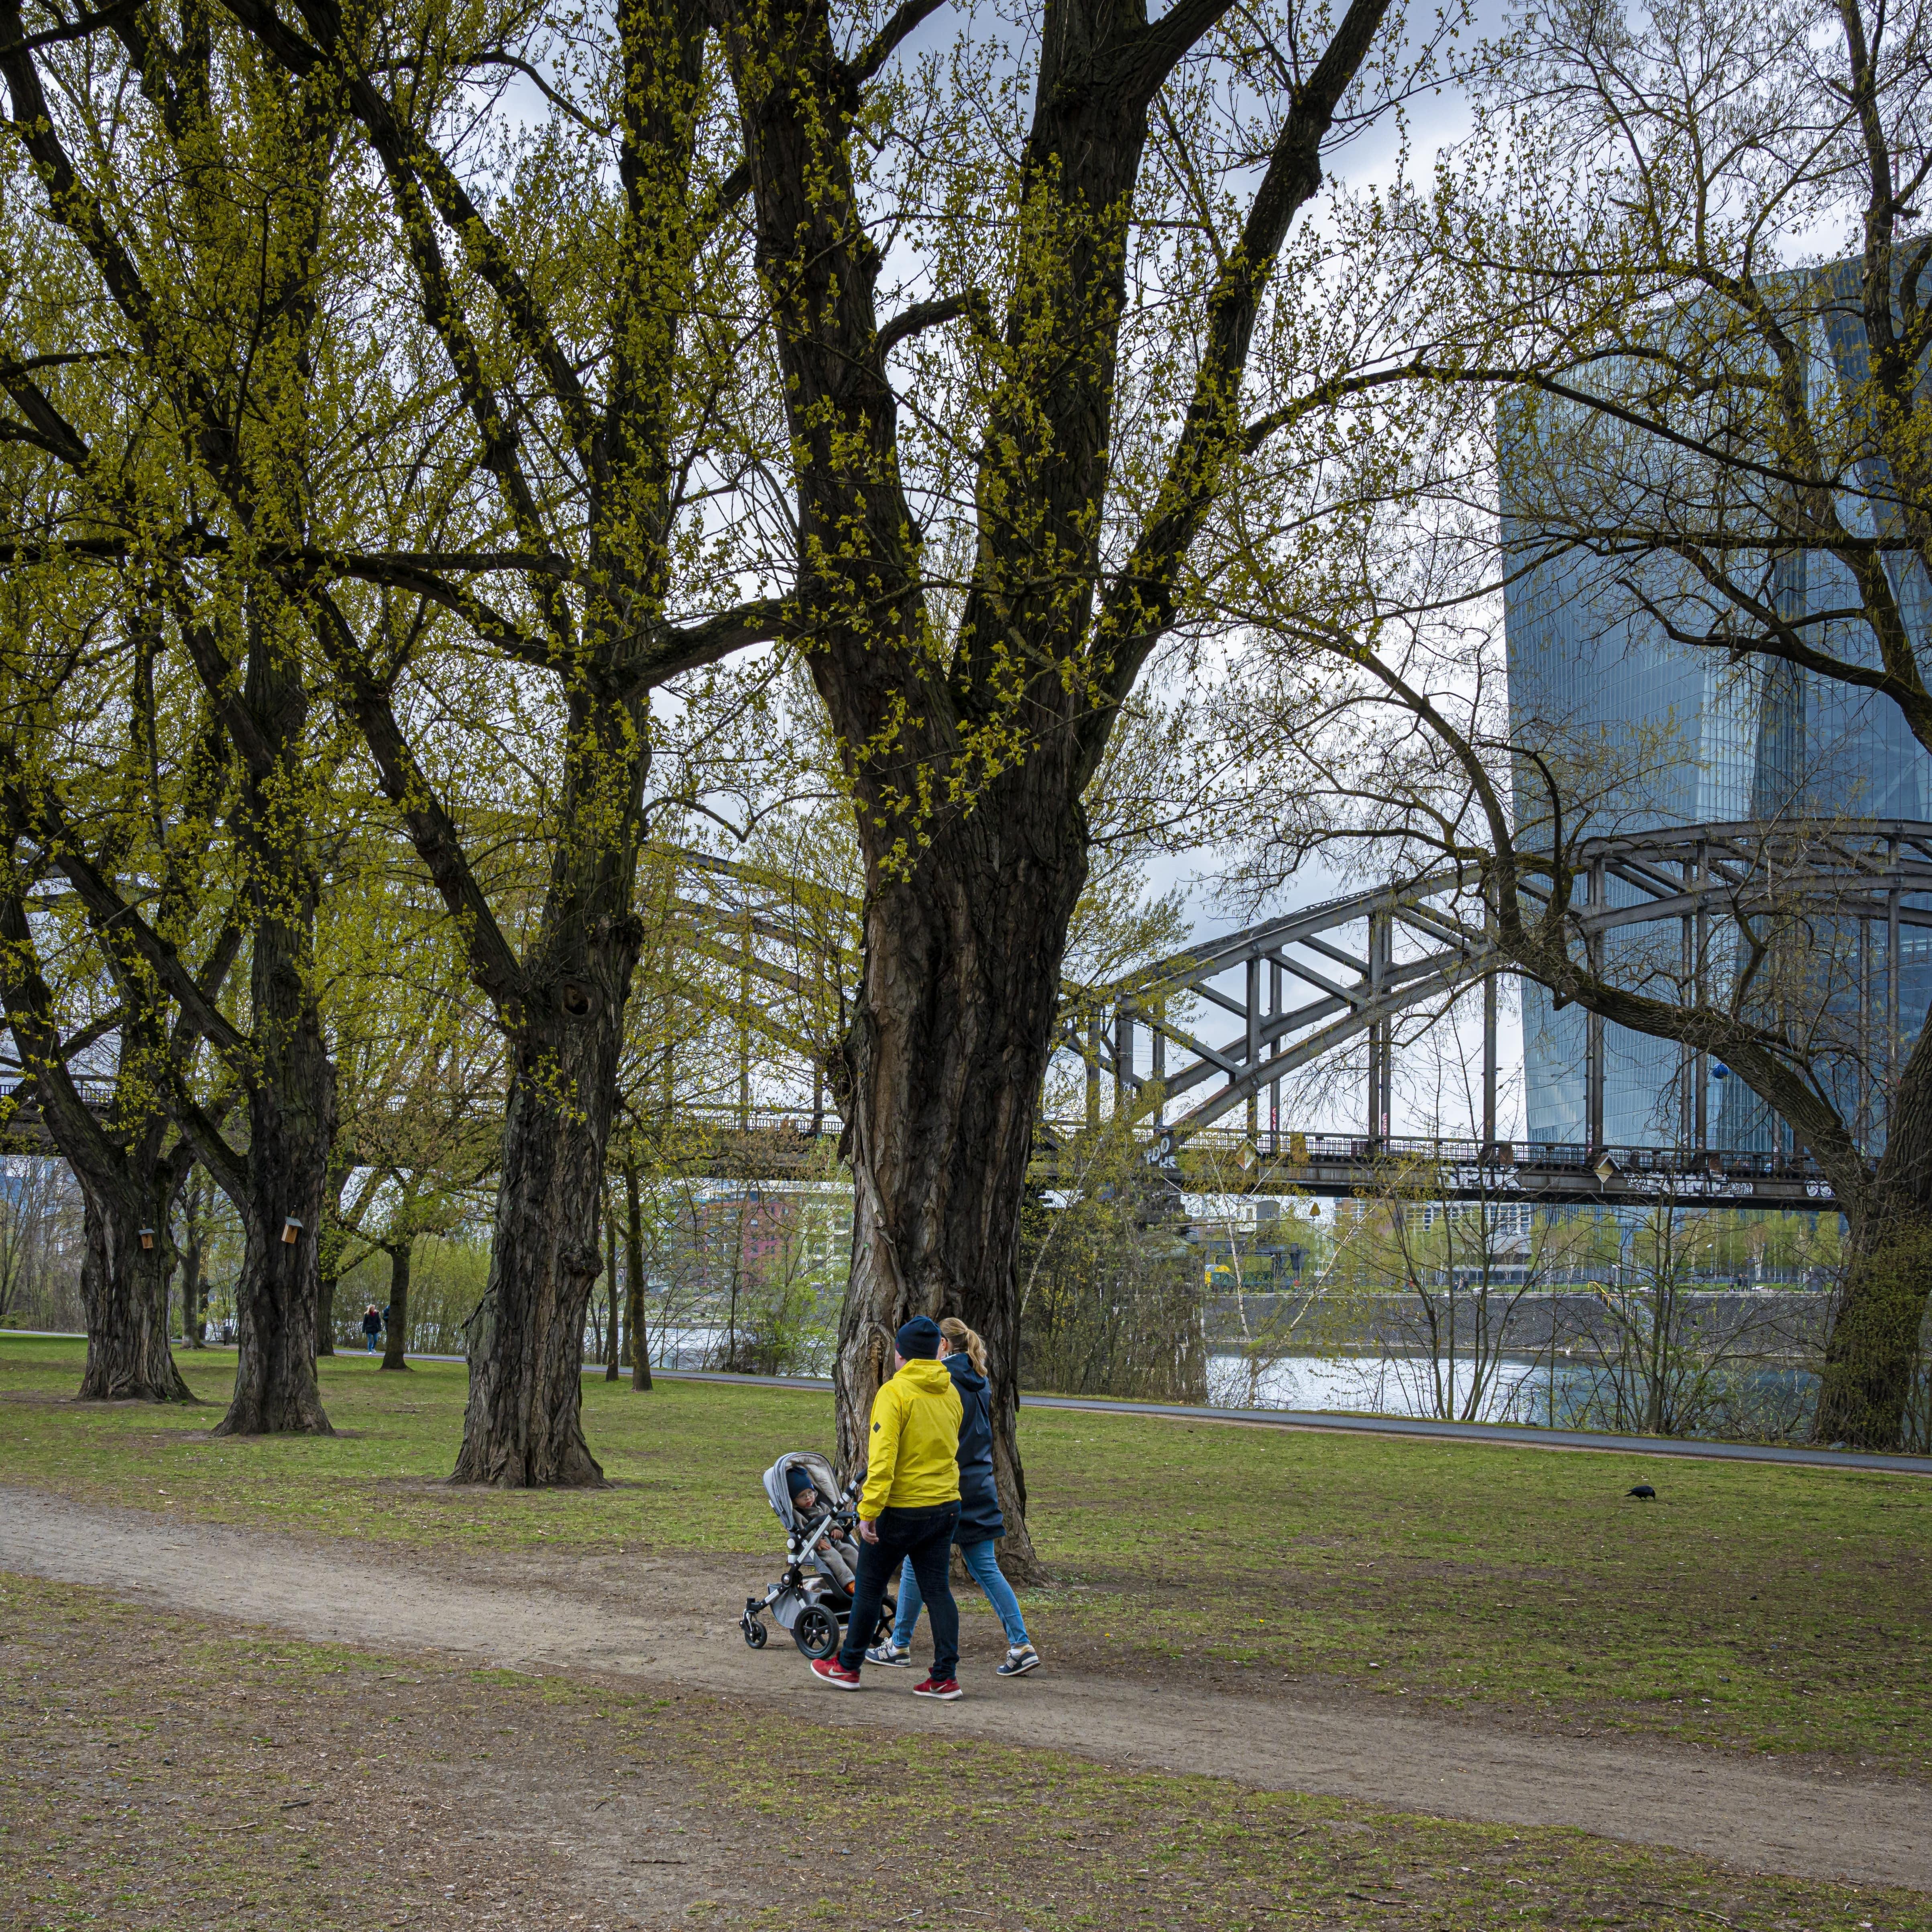 Spaziergang am Mainufer in Frankfurt. Eltern schieben einen Kinderwagen.